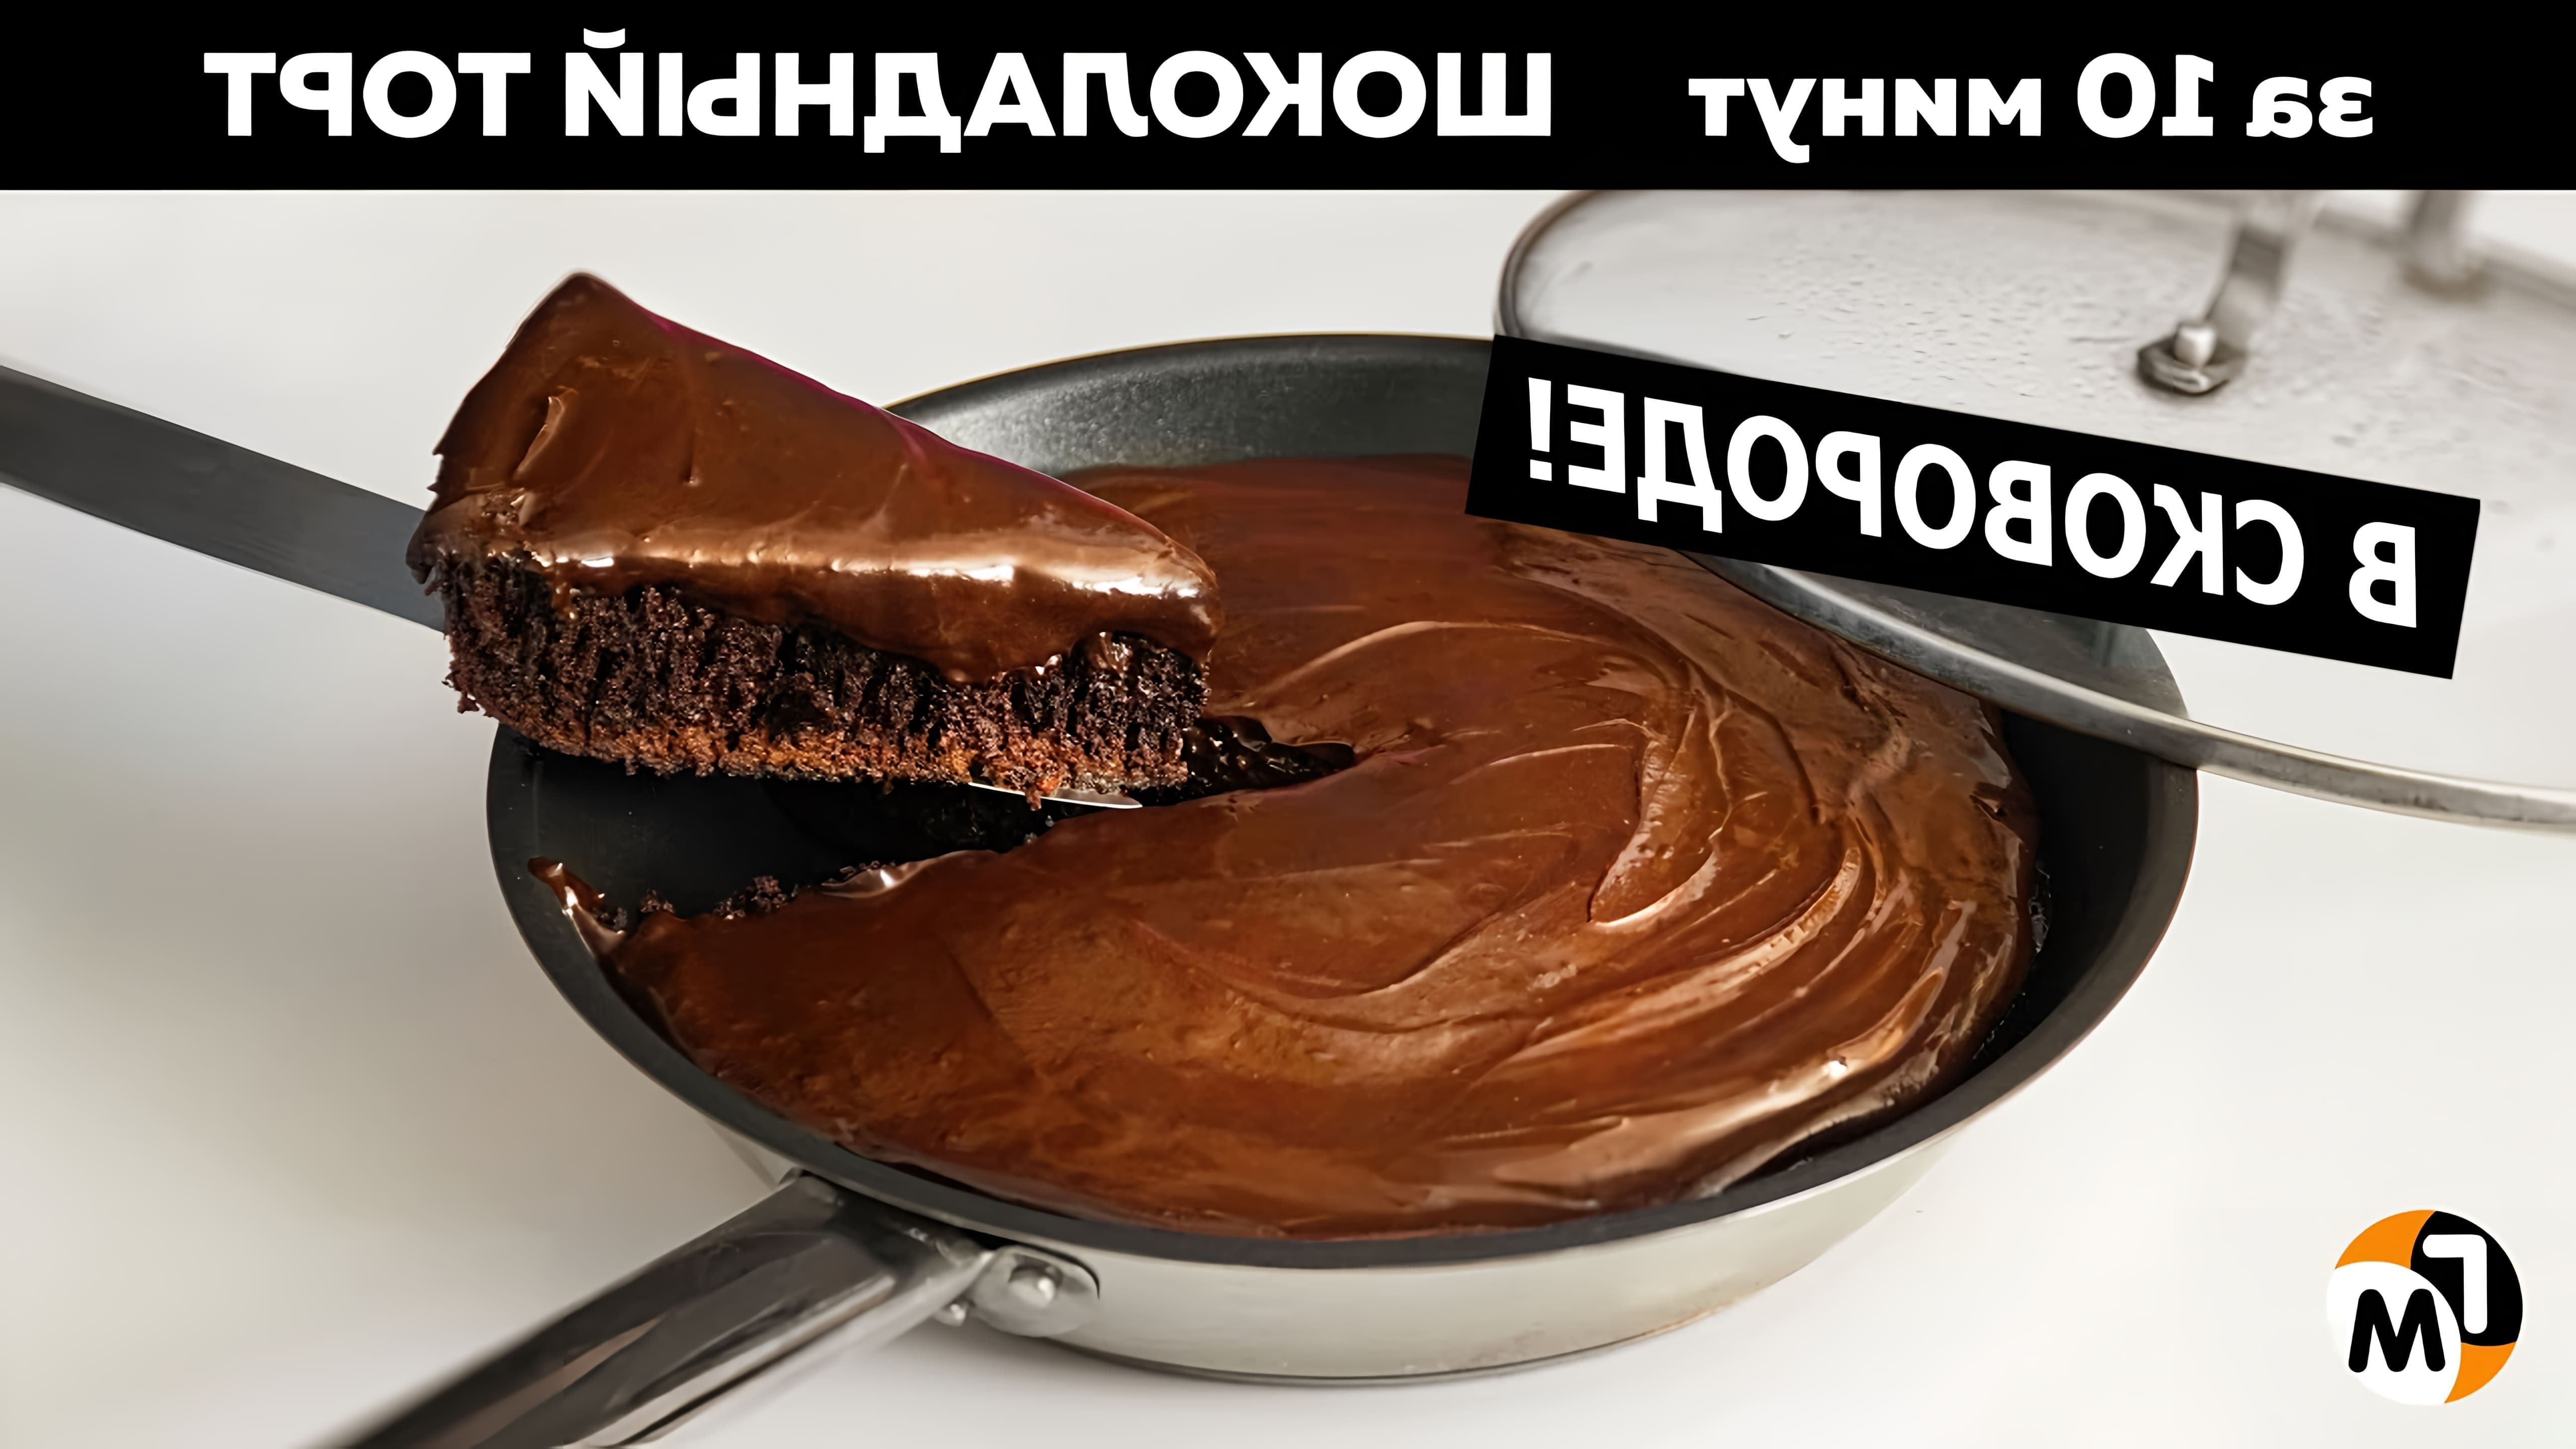 В этом видео демонстрируется рецепт шоколадного торта, который готовится на сковороде